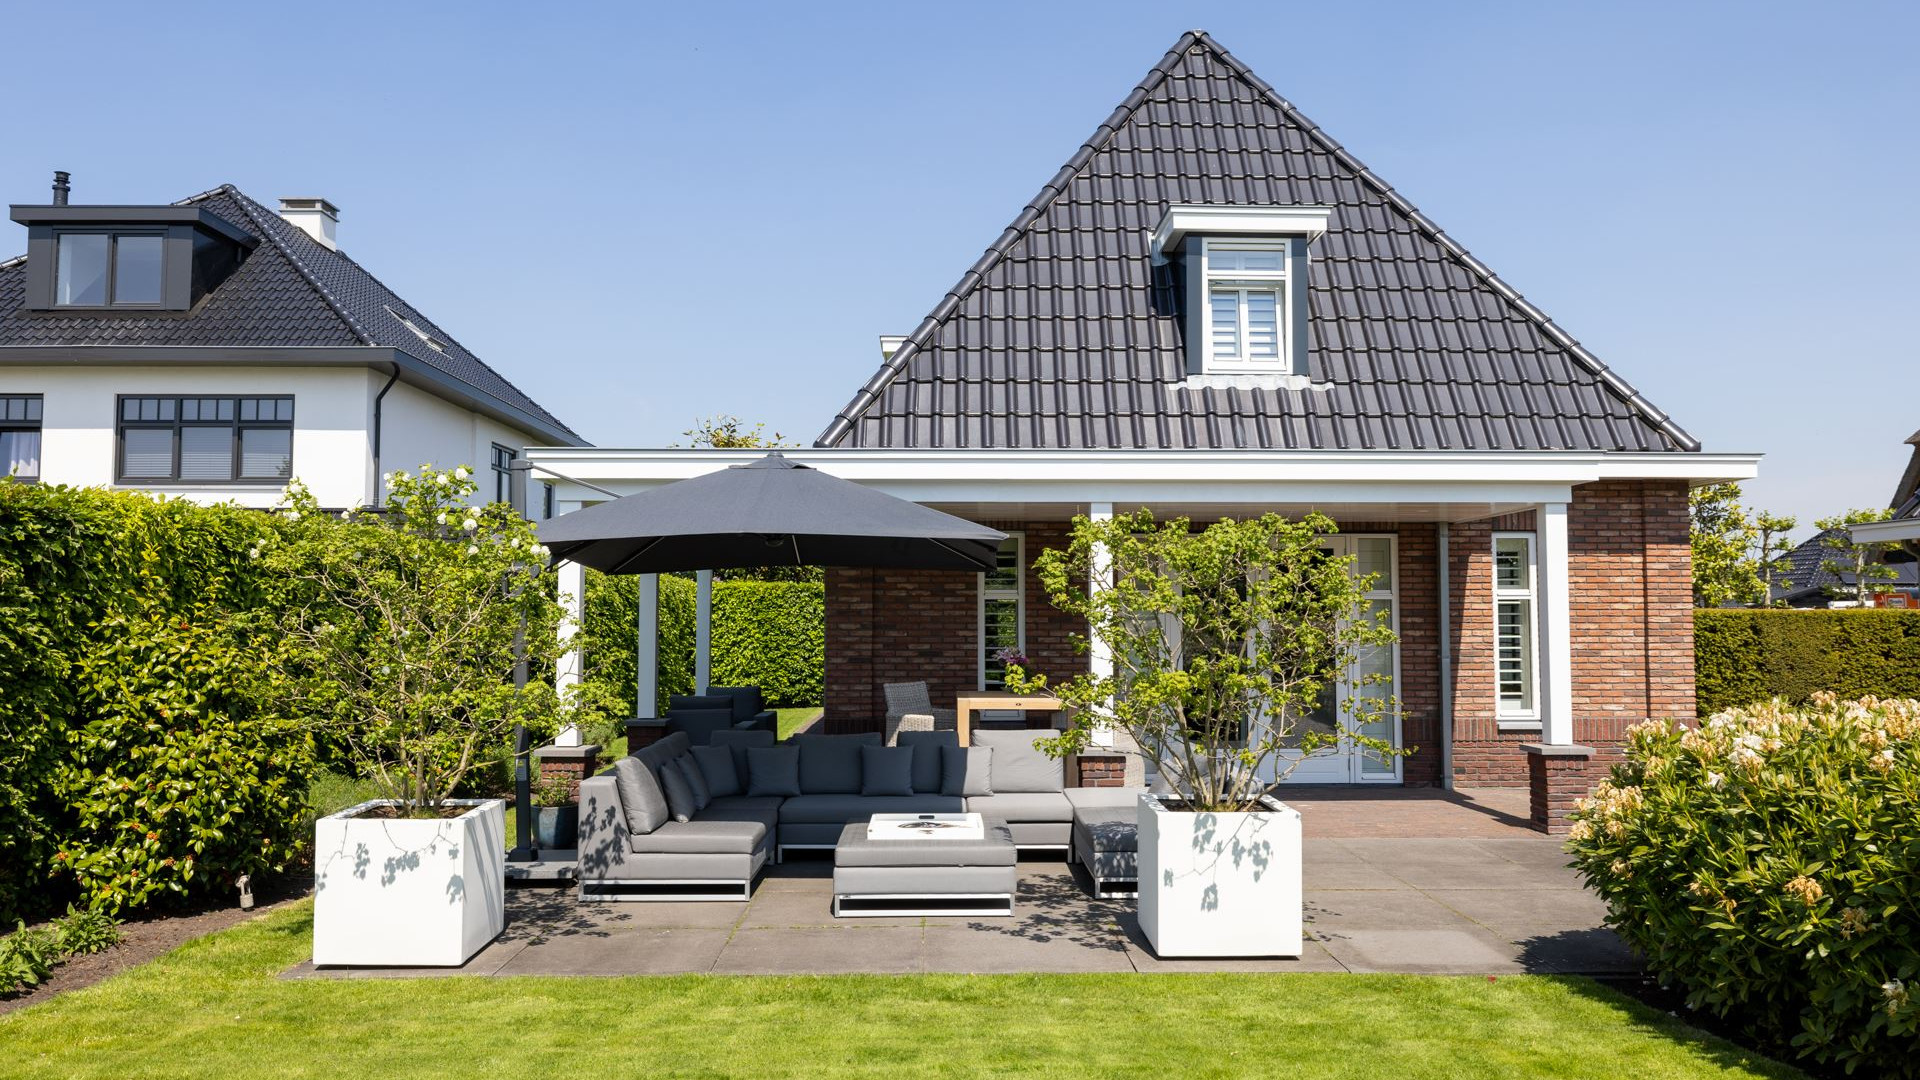 Keeper van Feijenoord koopt miljoenen villa in Berkel en Rodenrijs. Zie foto's 26